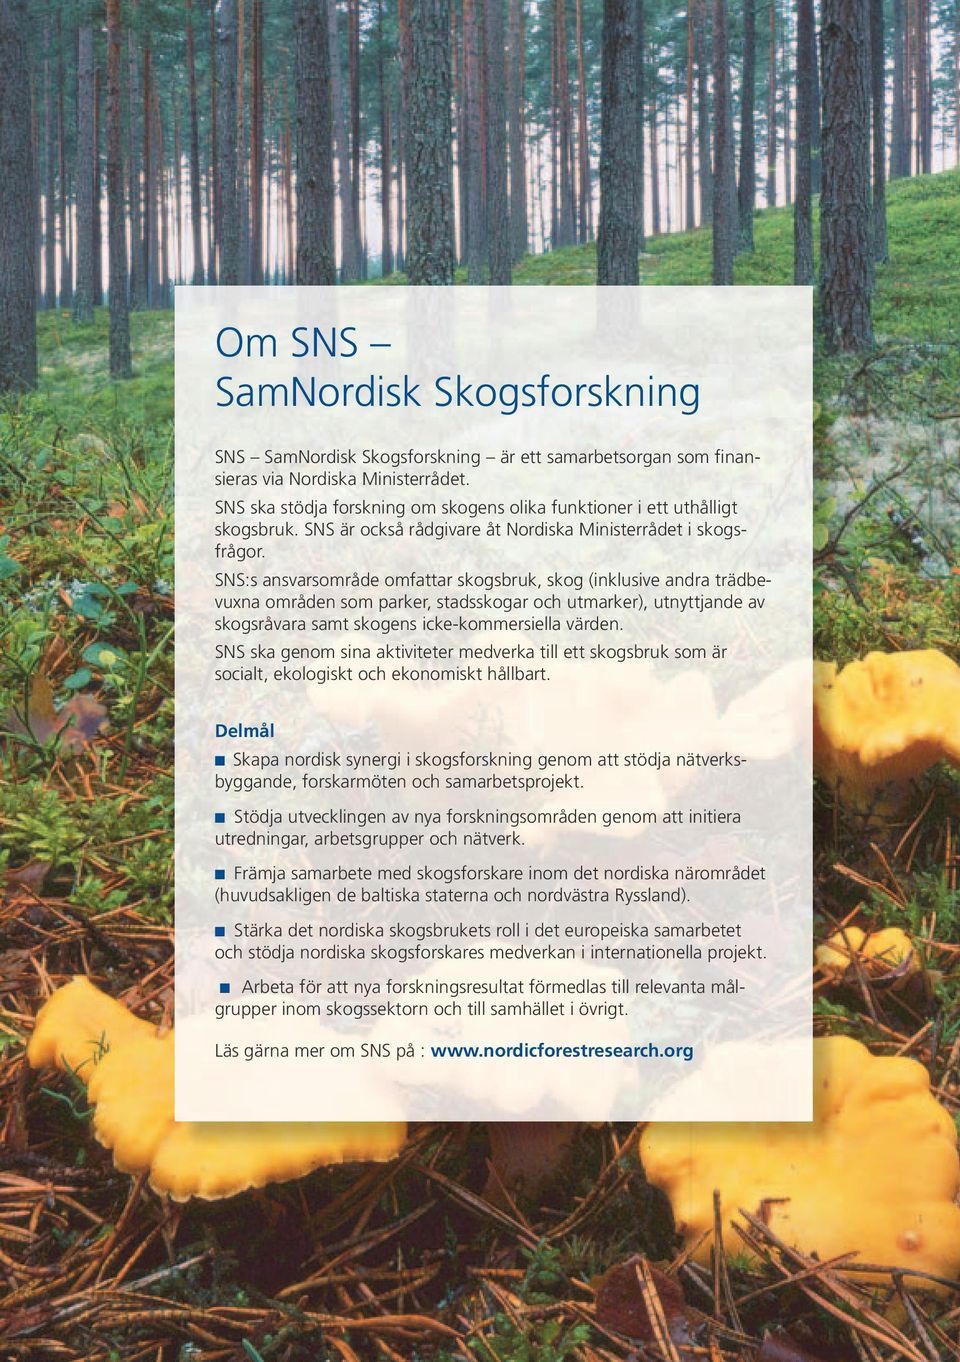 SNS:s ansvarsområde omfattar skogsbruk, skog (inklusive andra trädbevuxna områden som parker, stadsskogar och utmarker), utnyttjande av skogsråvara samt skogens icke-kommersiella värden.